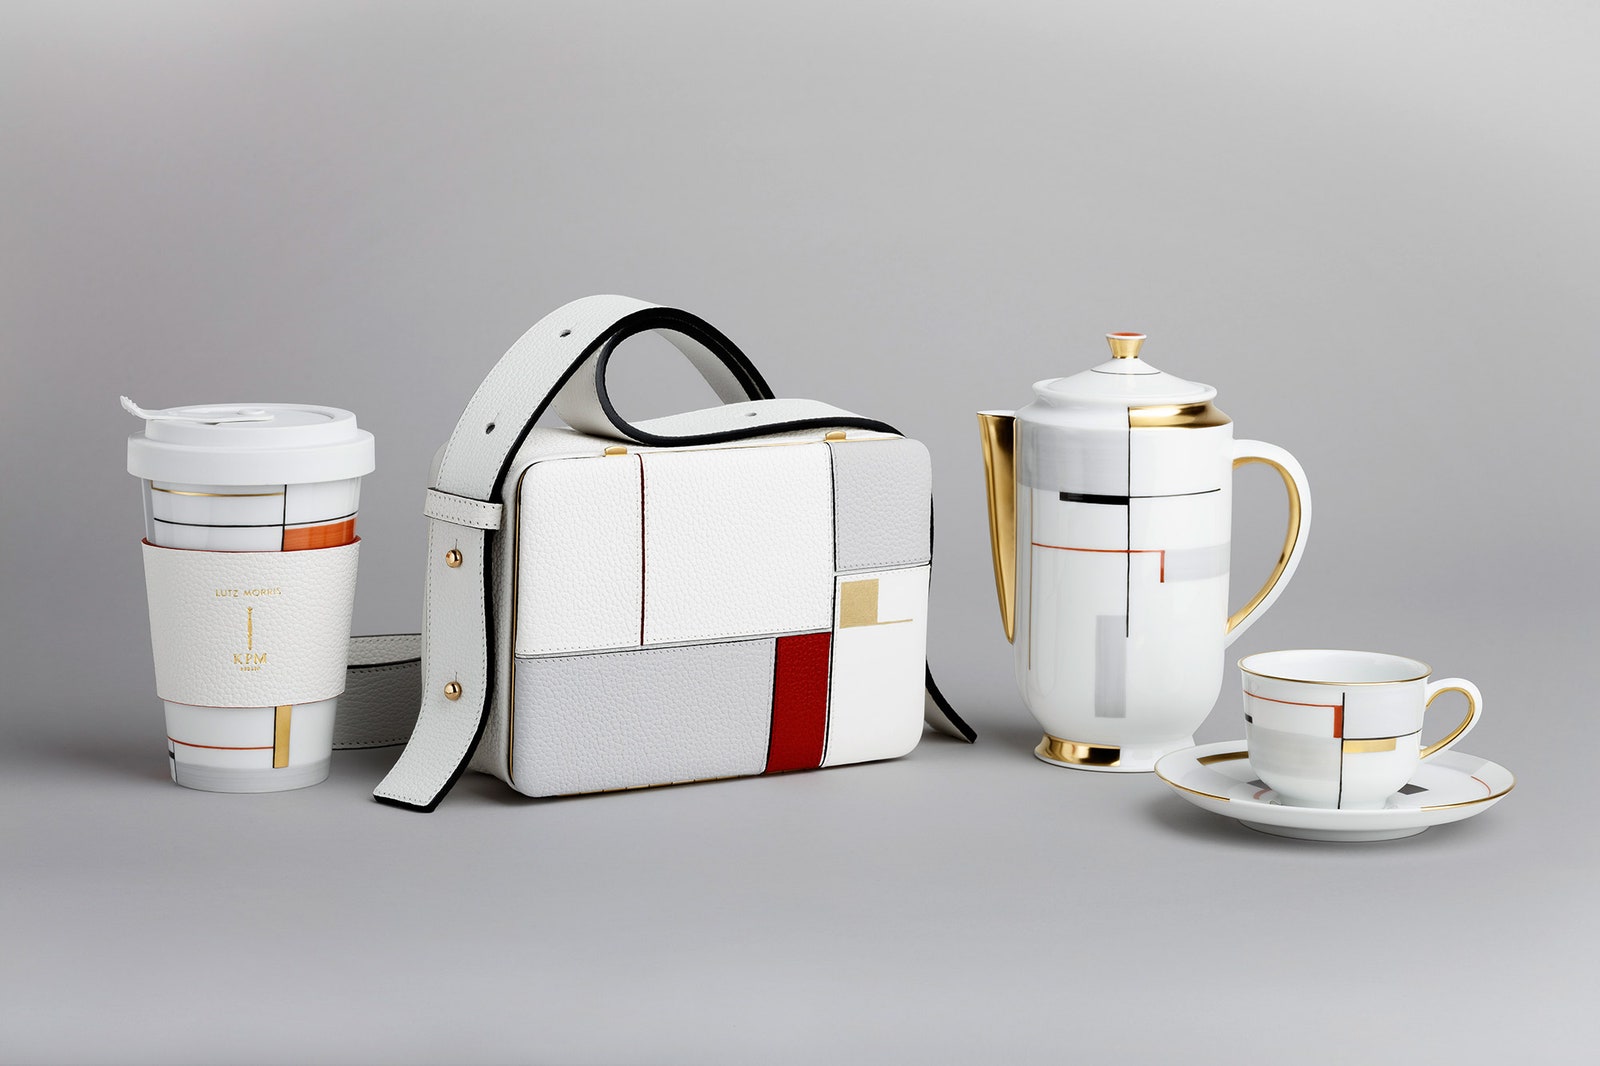 Коллекция фарфоровой посуды в стиле баухаус от Lutz Morris и KPM